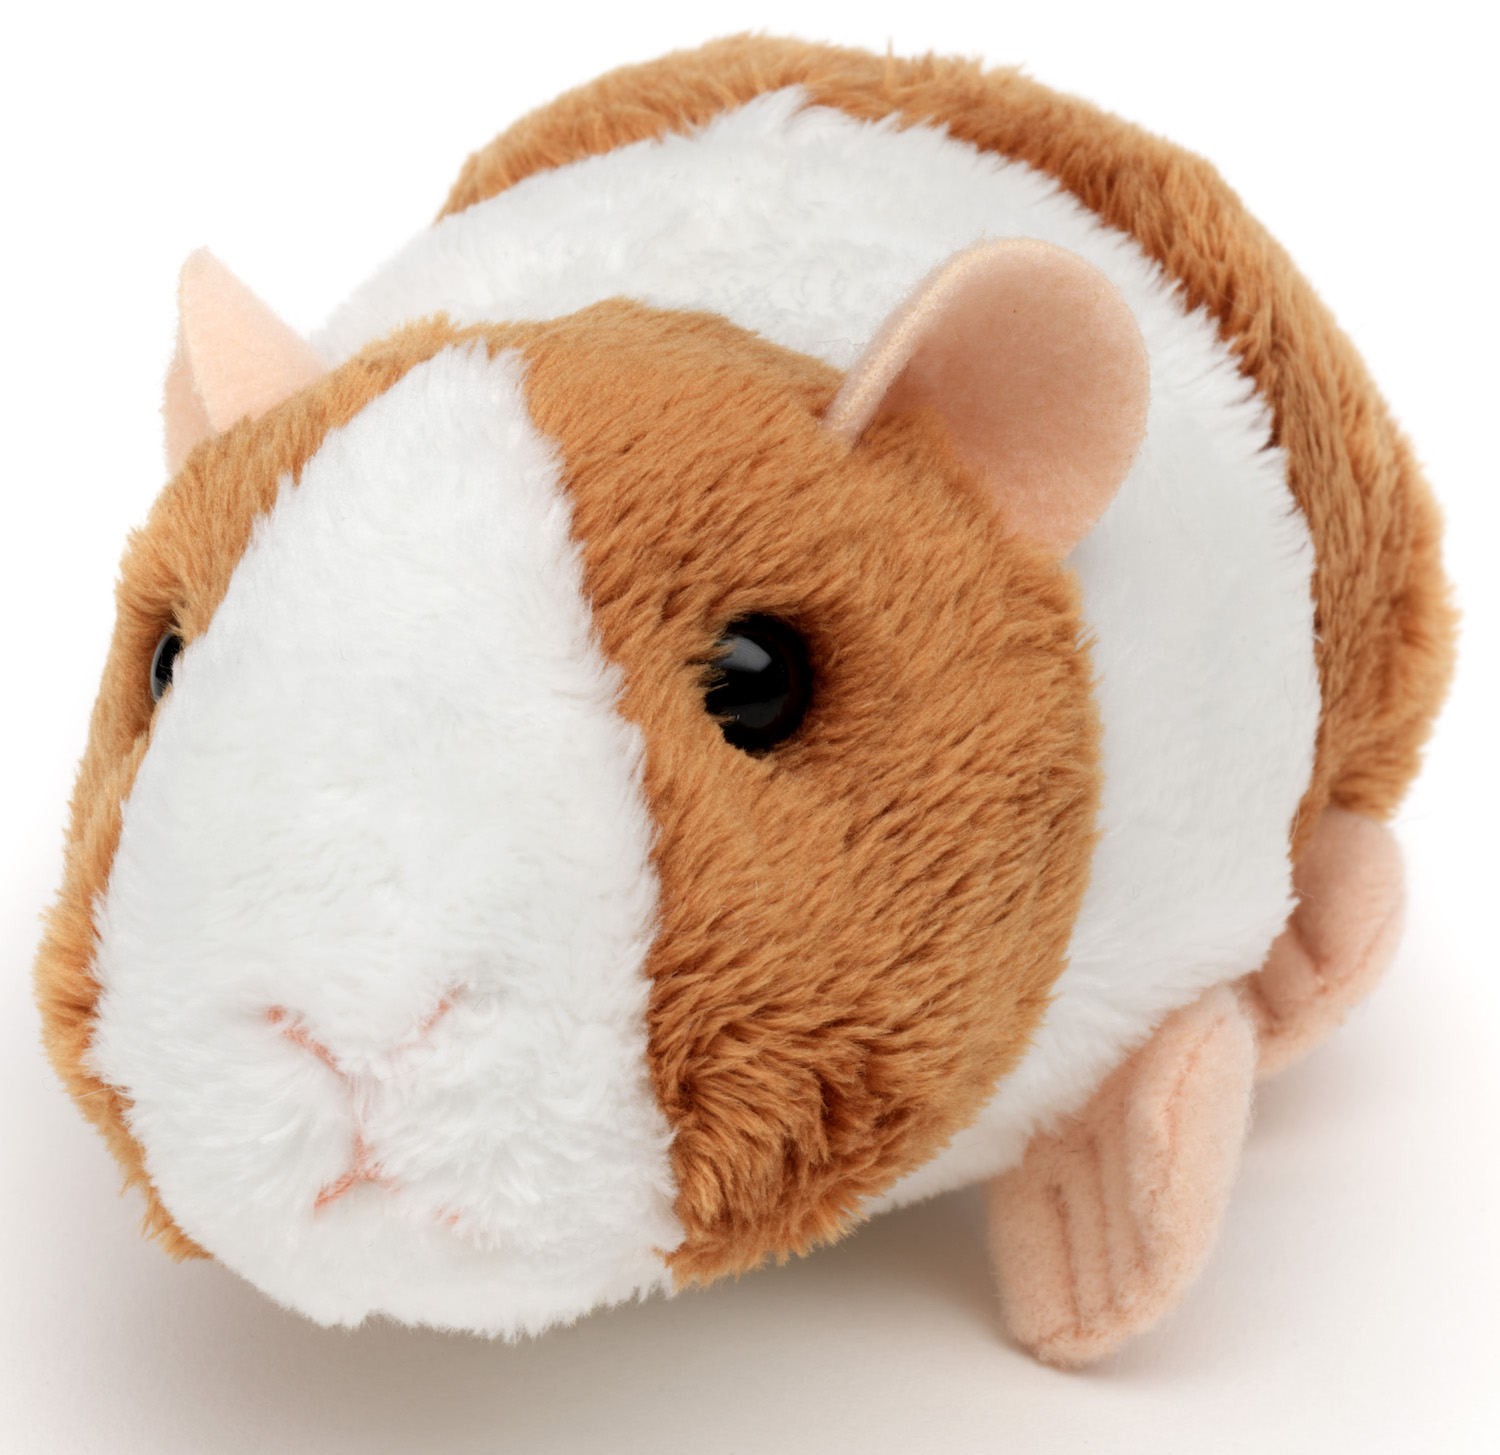 Guinea pig plushie (brown) - 15 cm (length)